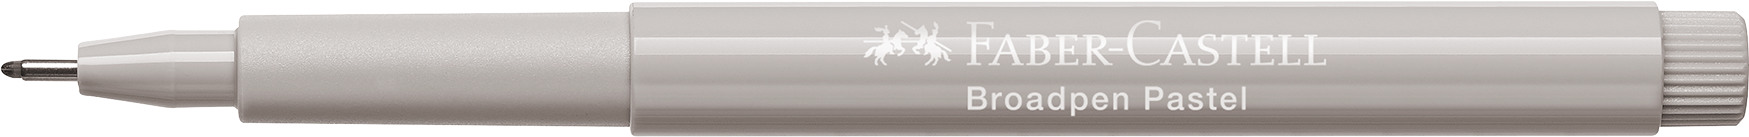 FABER-CASTELL Feutre Broadpen 1554 0.8mm 155488 gris pastel